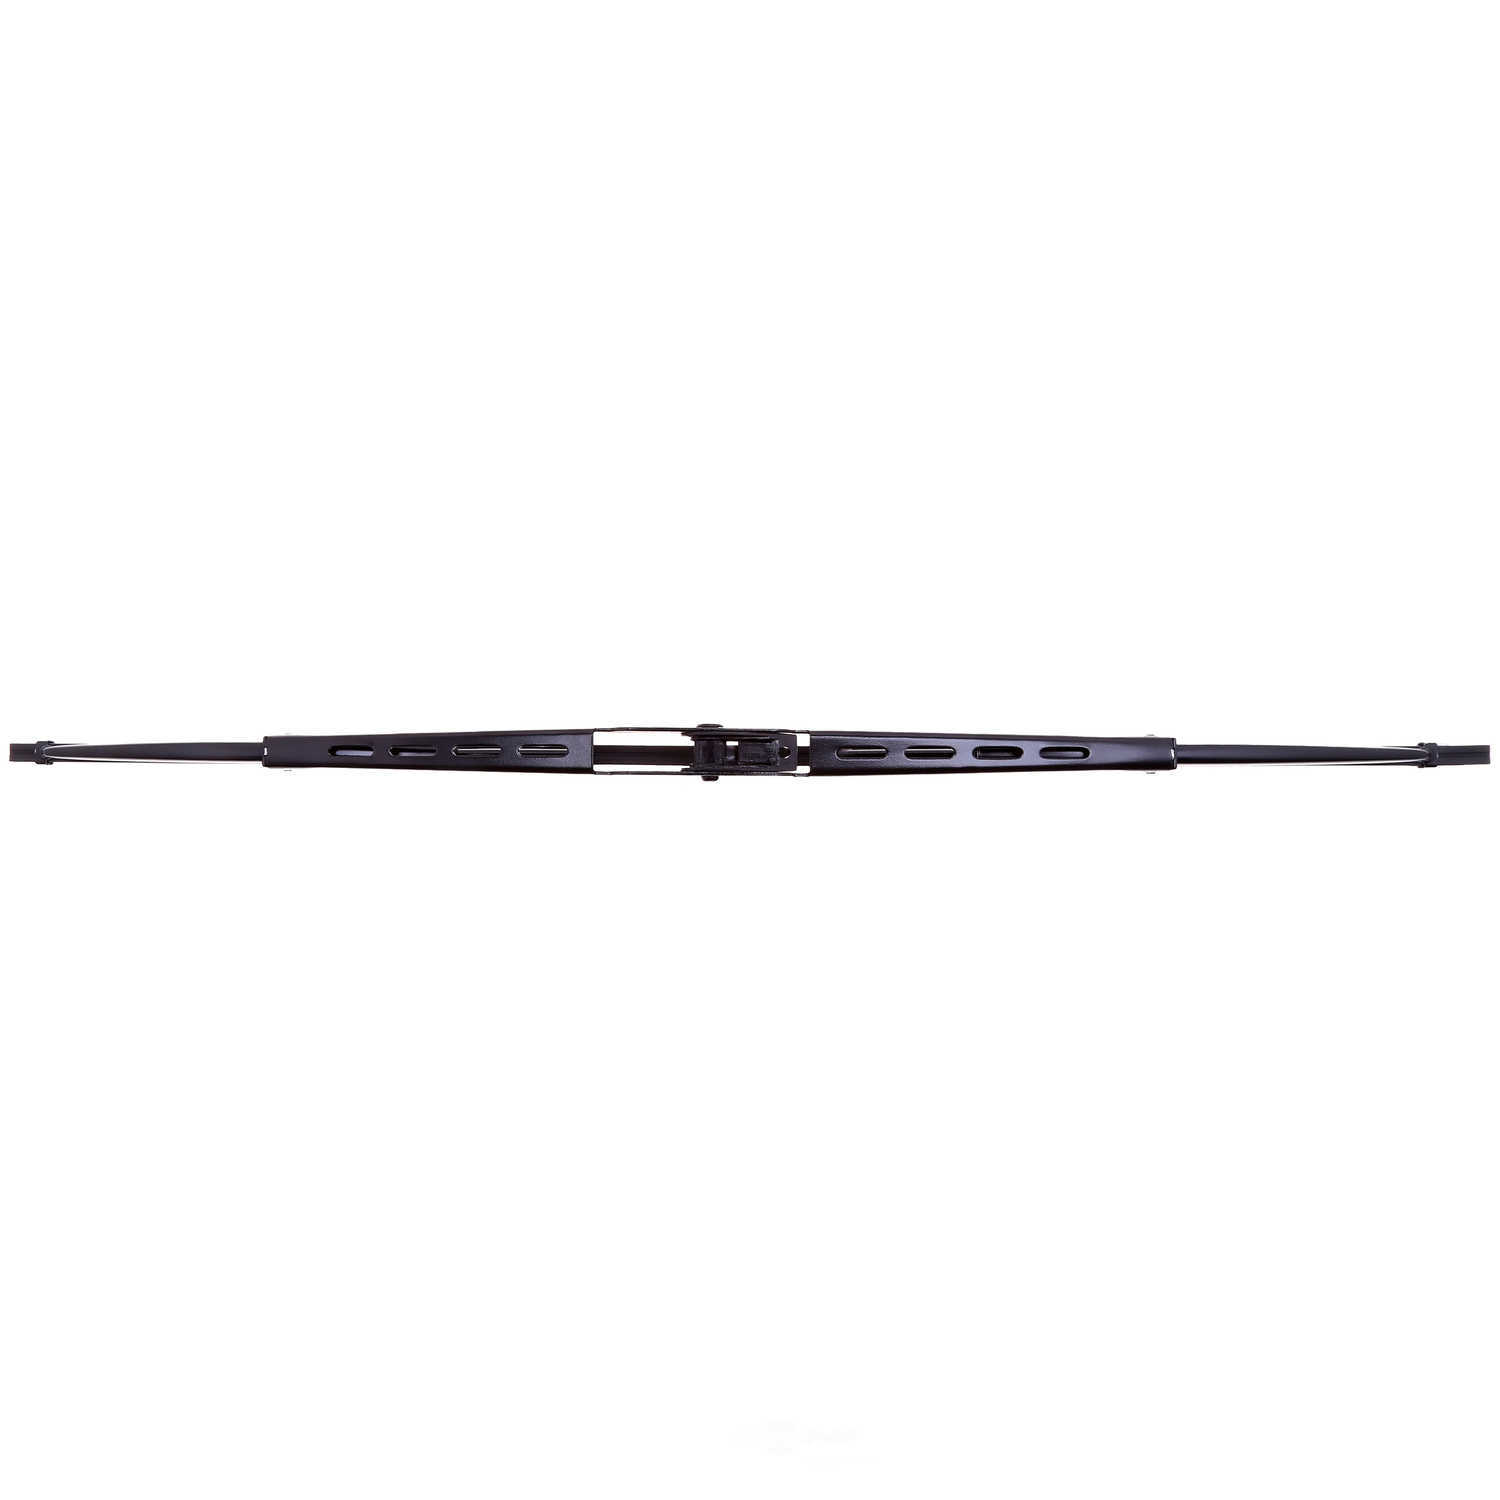 ANCO WIPER PRODUCTS - ANCO 14-Series Wiper Blade - ANC 14C-18